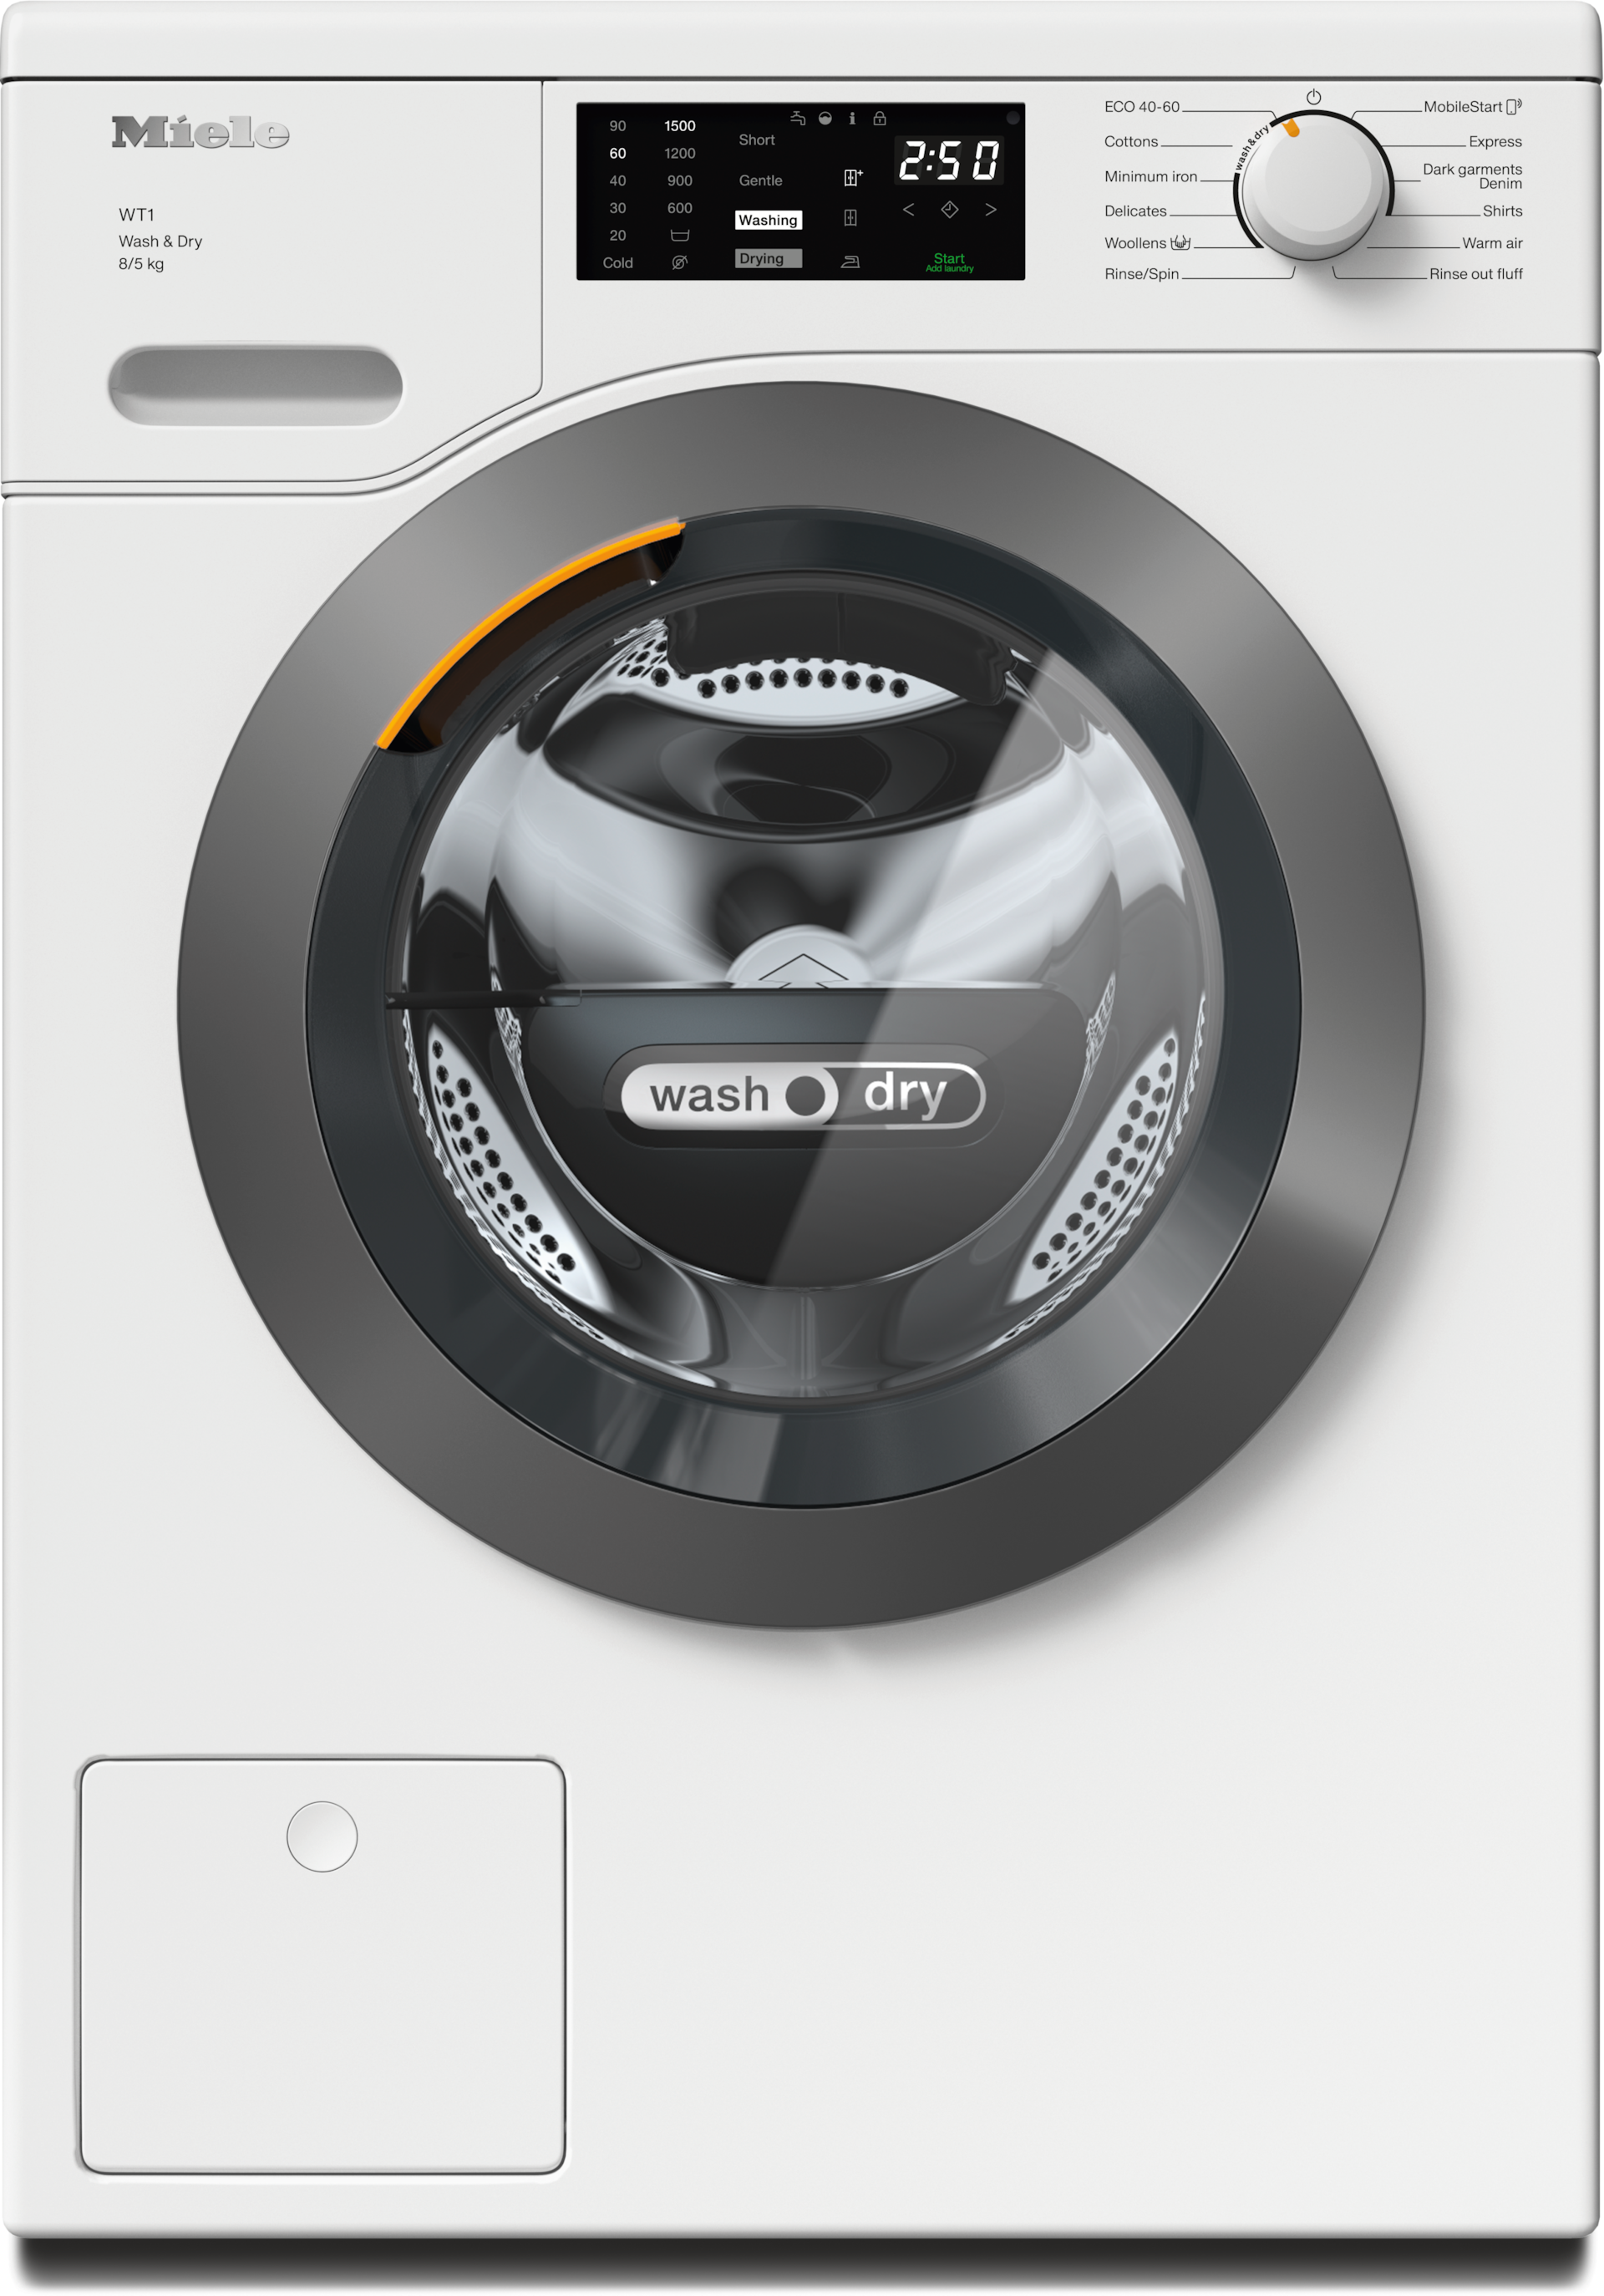 Washing machines - WTD160 WCS 8/5 kg Lotus white - 1